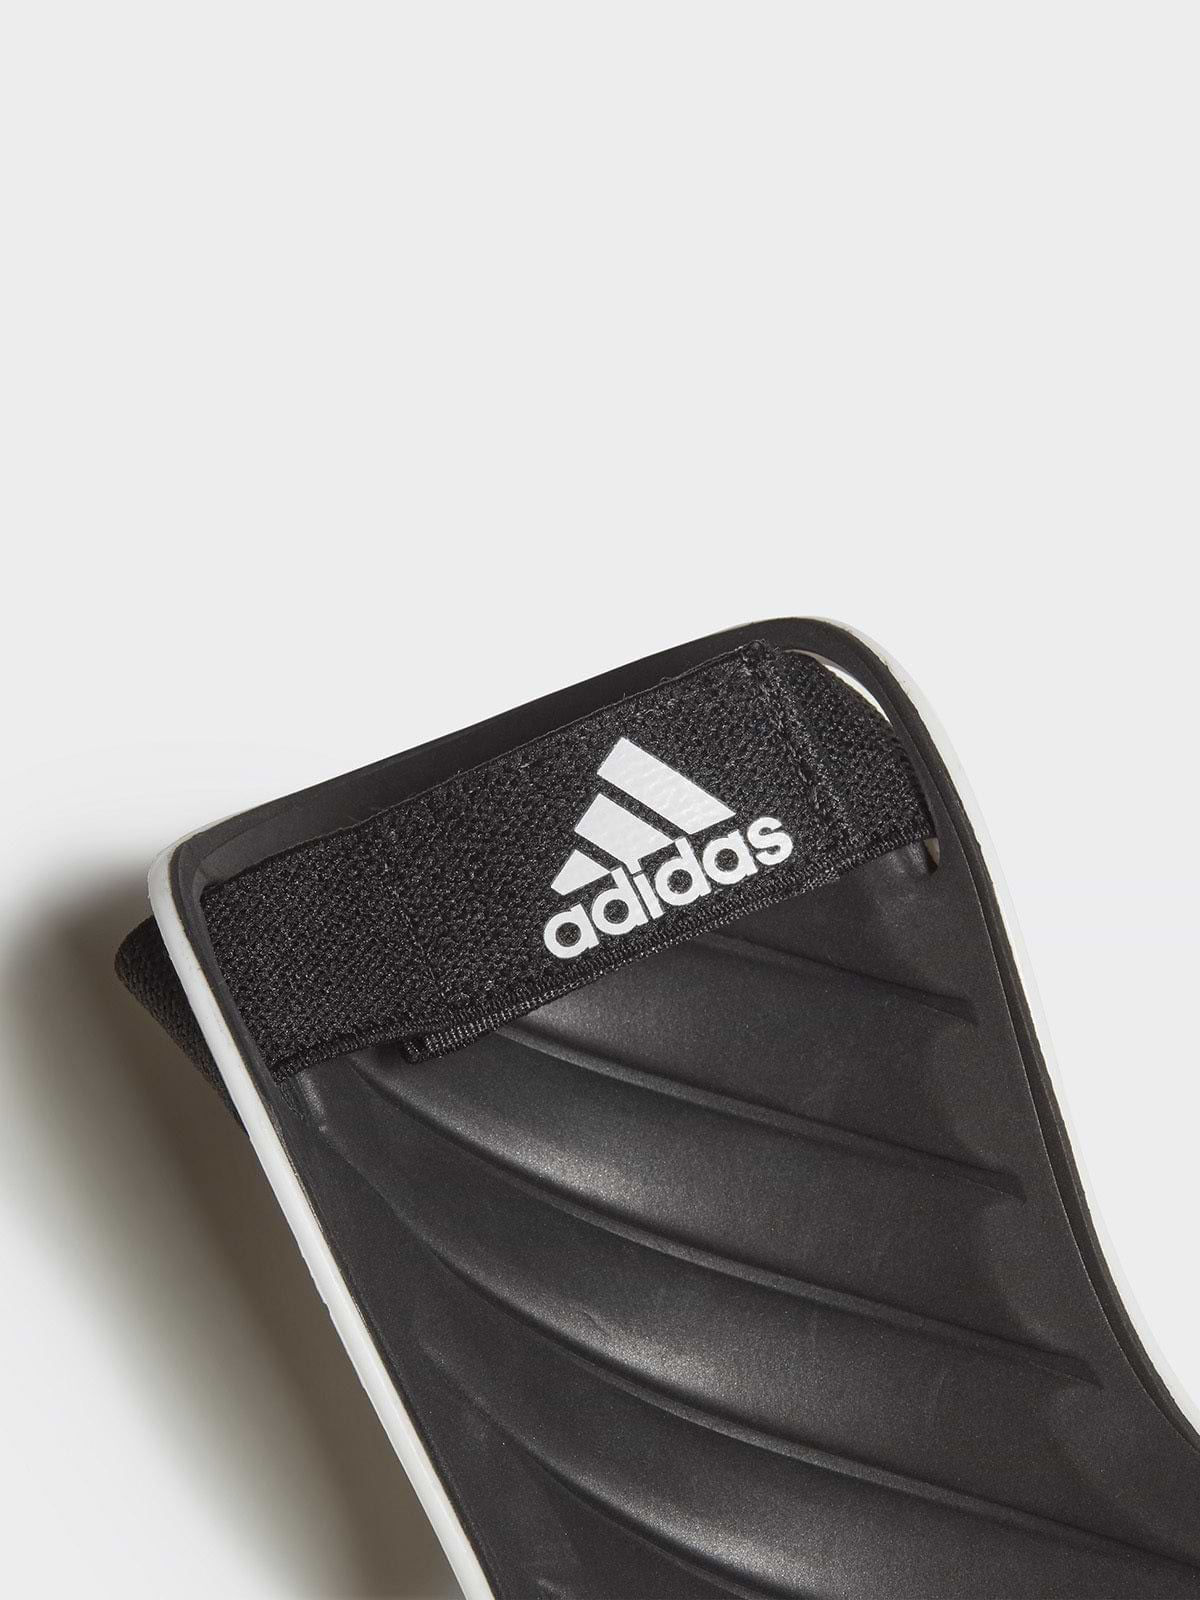 מגני שוקיים לכדורגל עם הדפס לוגו / גברים- adidas performance|אדידס פרפורמנס